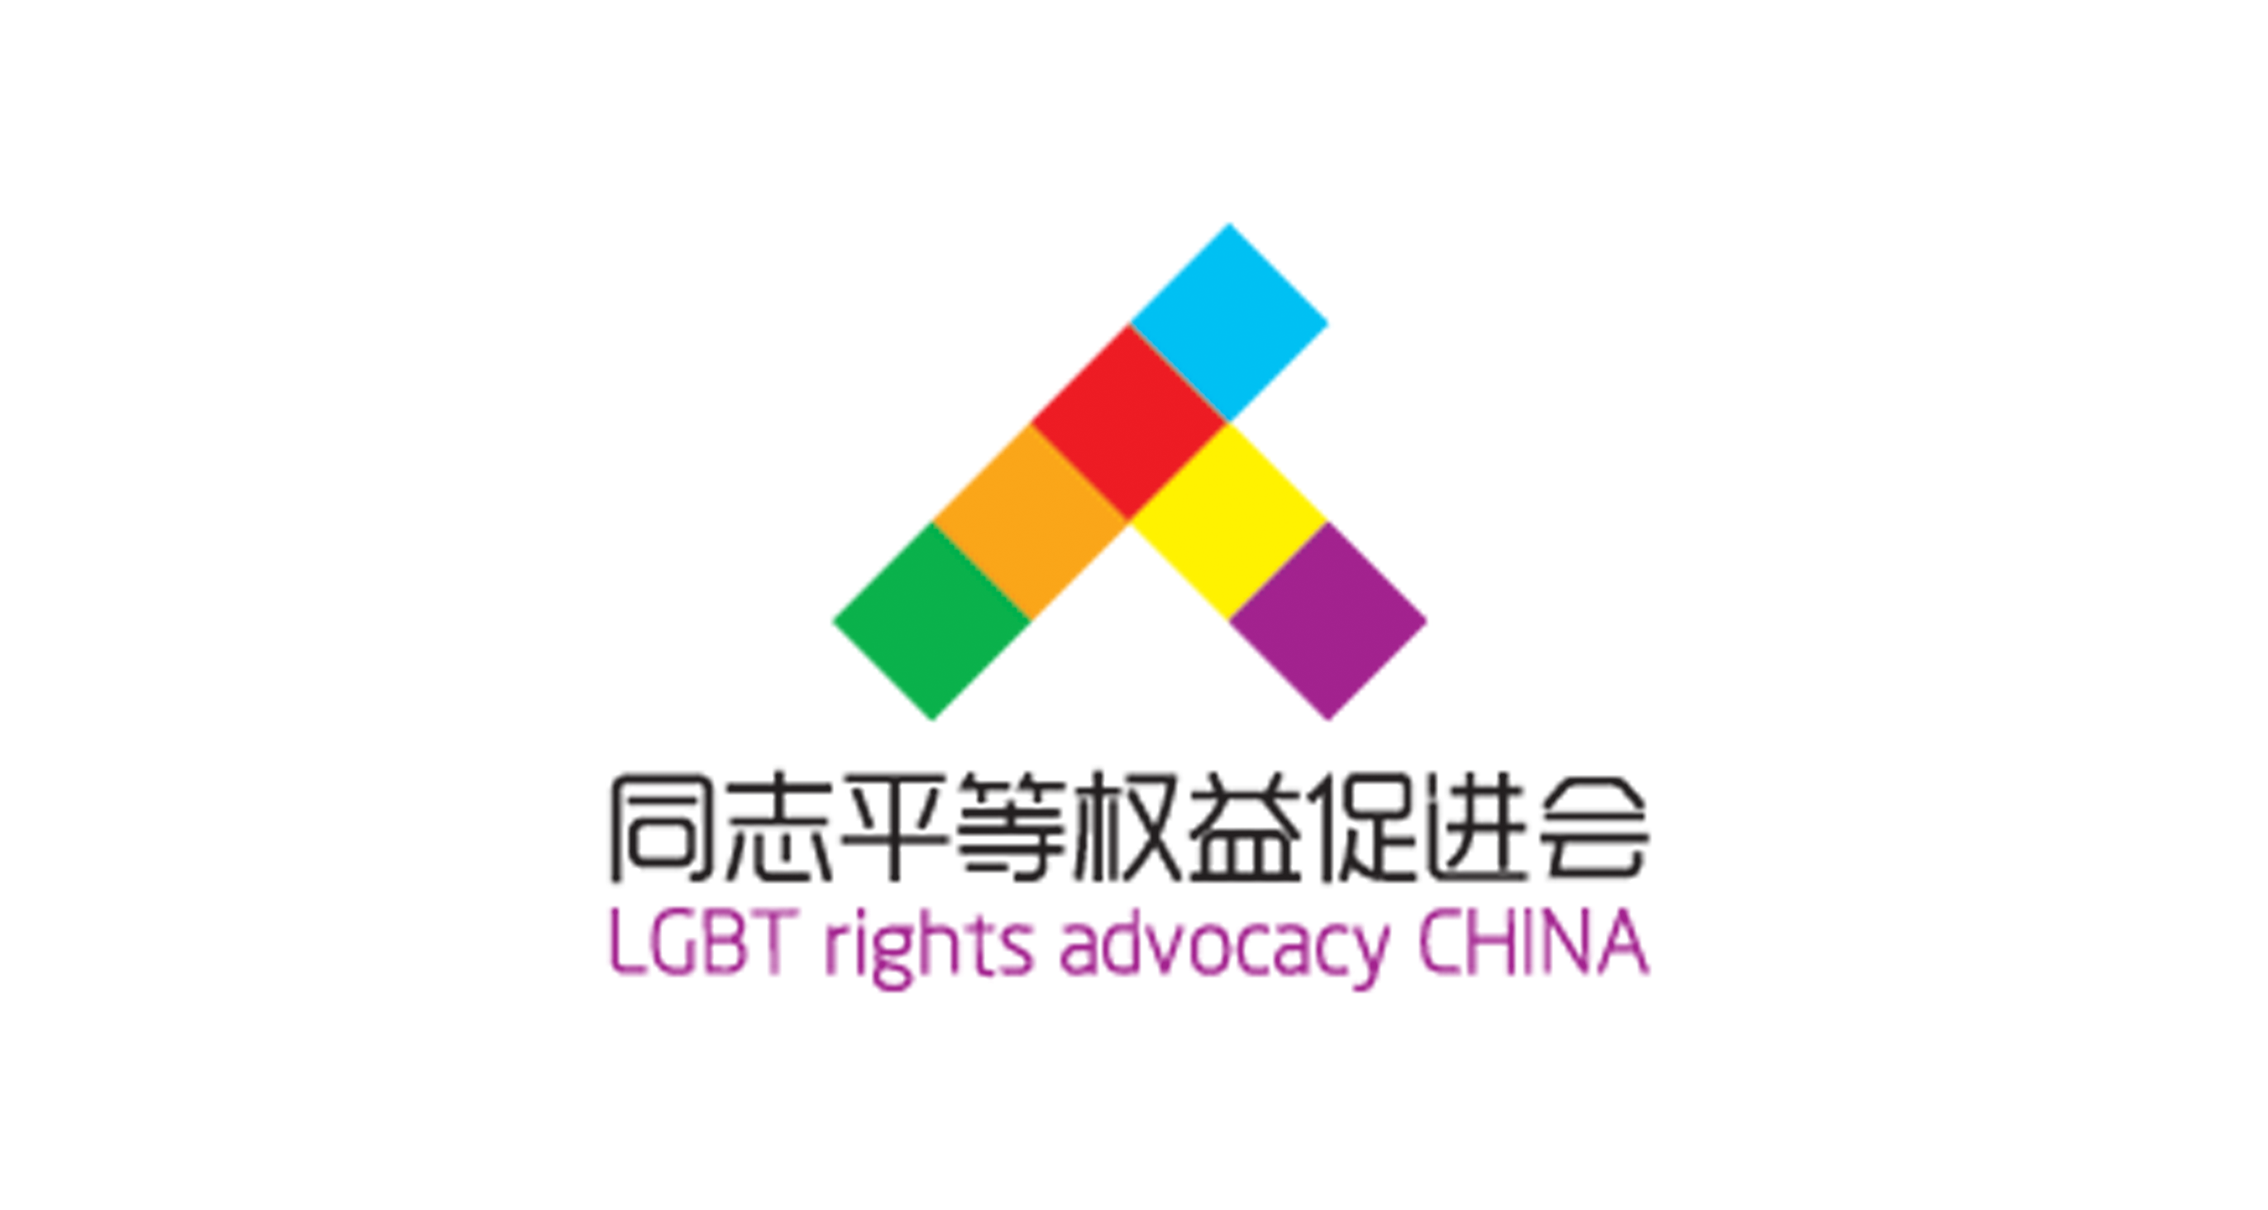 同志平等权益促进会 LGBT Rights Advocacy China